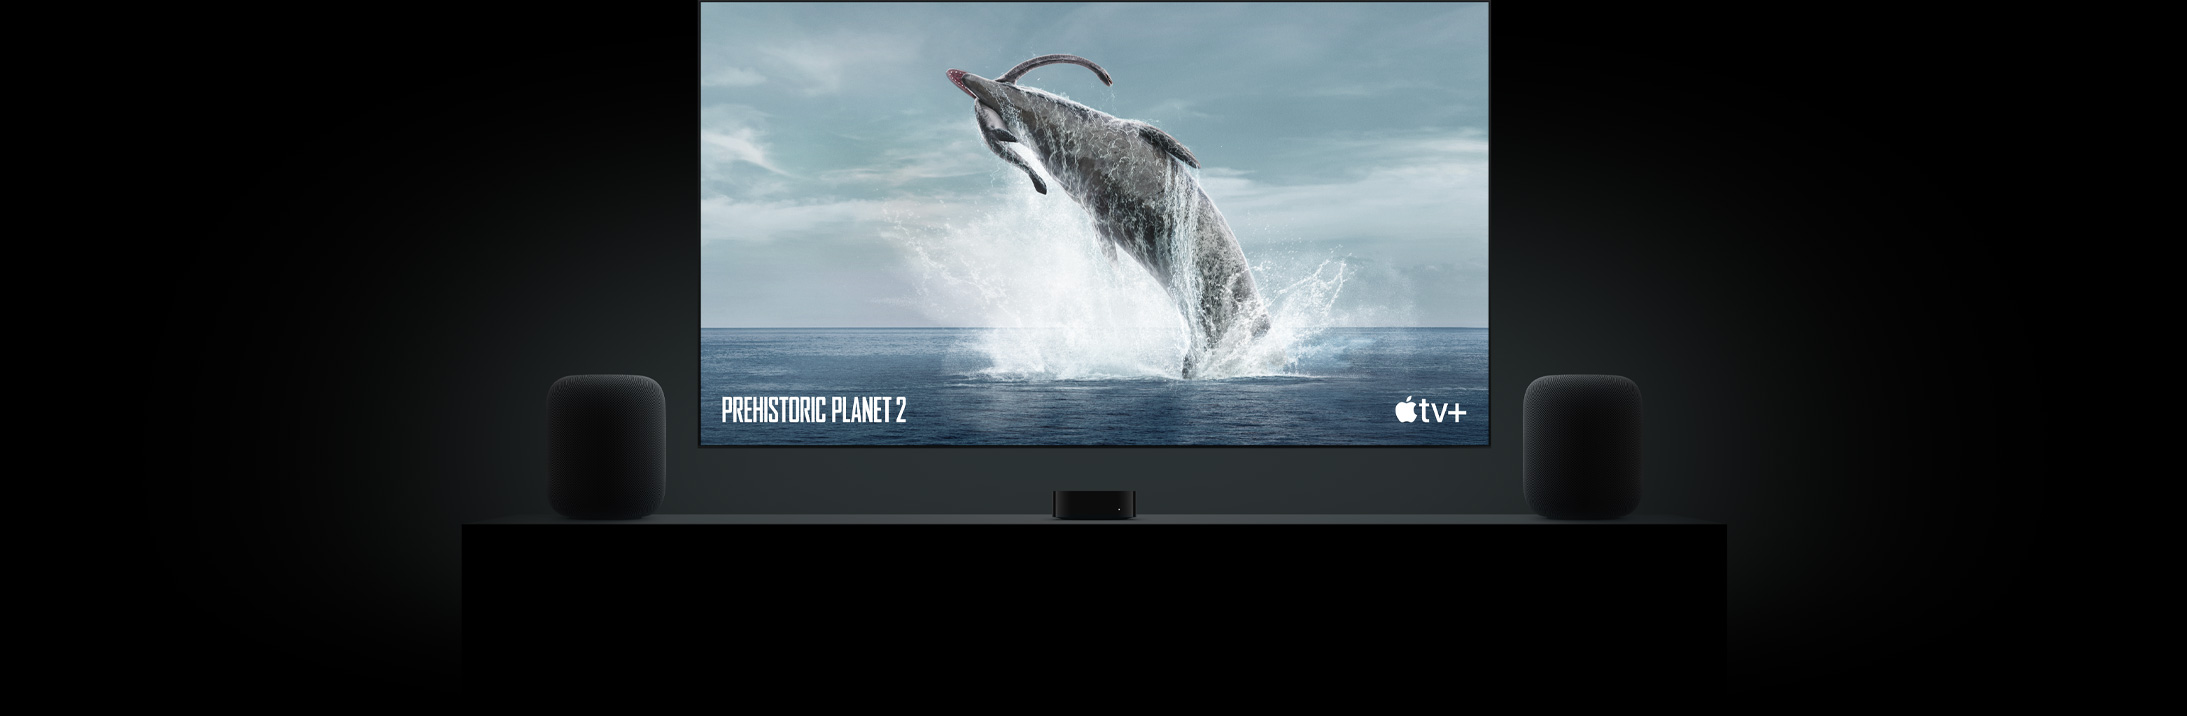 Suuri taulu-TV, jossa näkyy upea kuva dinosauruksesta Prehistoric Planet -ohjelmasta. TV on asennettu Apple TV:n yläpuolelle, ja sen sivuilla on kaksi HomePod-kaiutinta olohuoneen senkin päällä